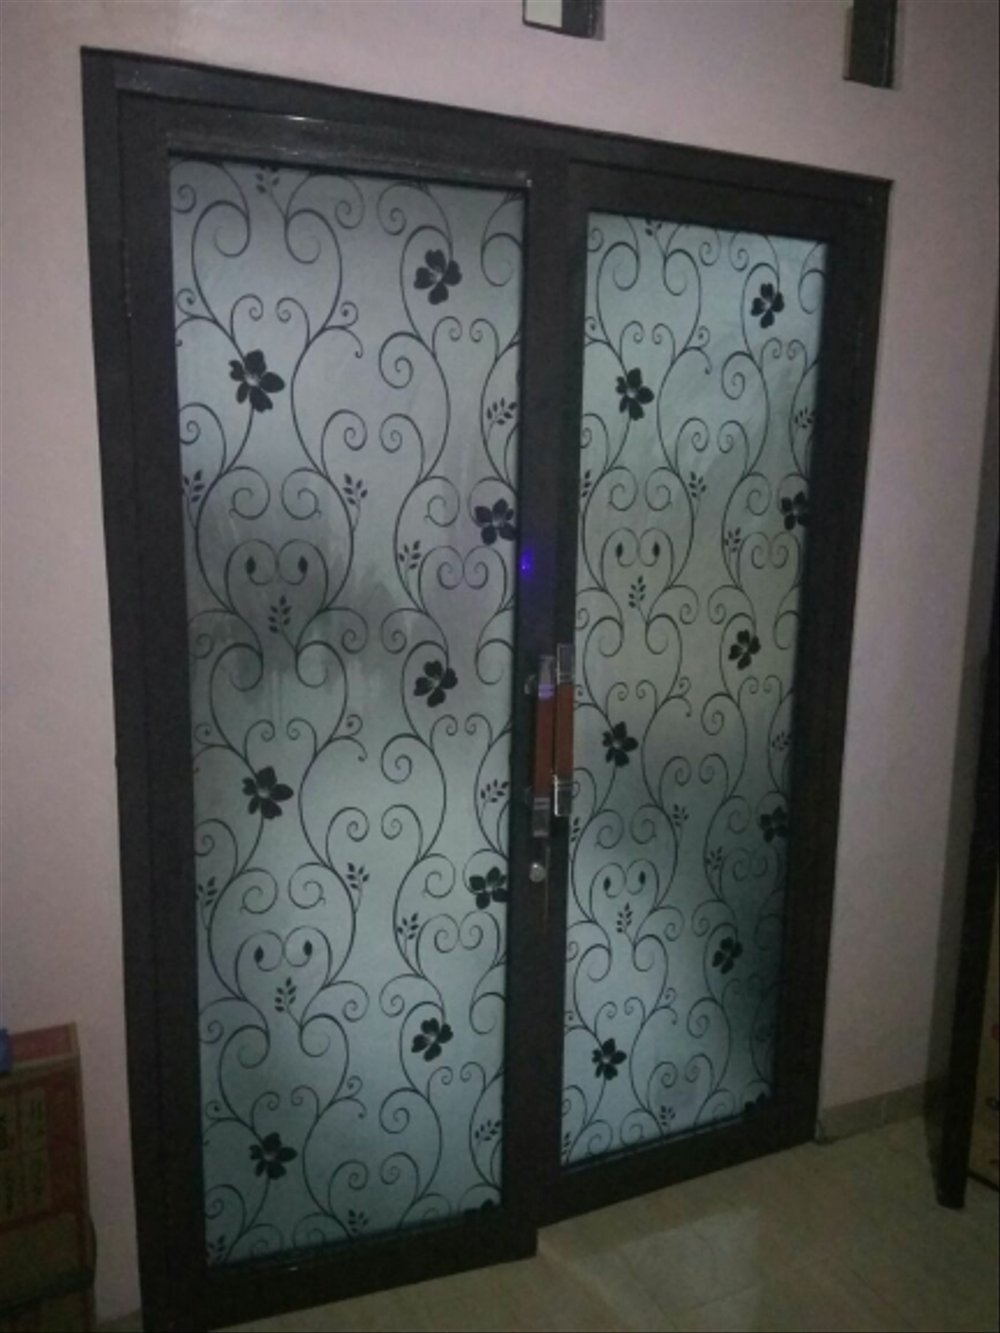 wallpaper kaca jendela,door,iron,property,product,glass